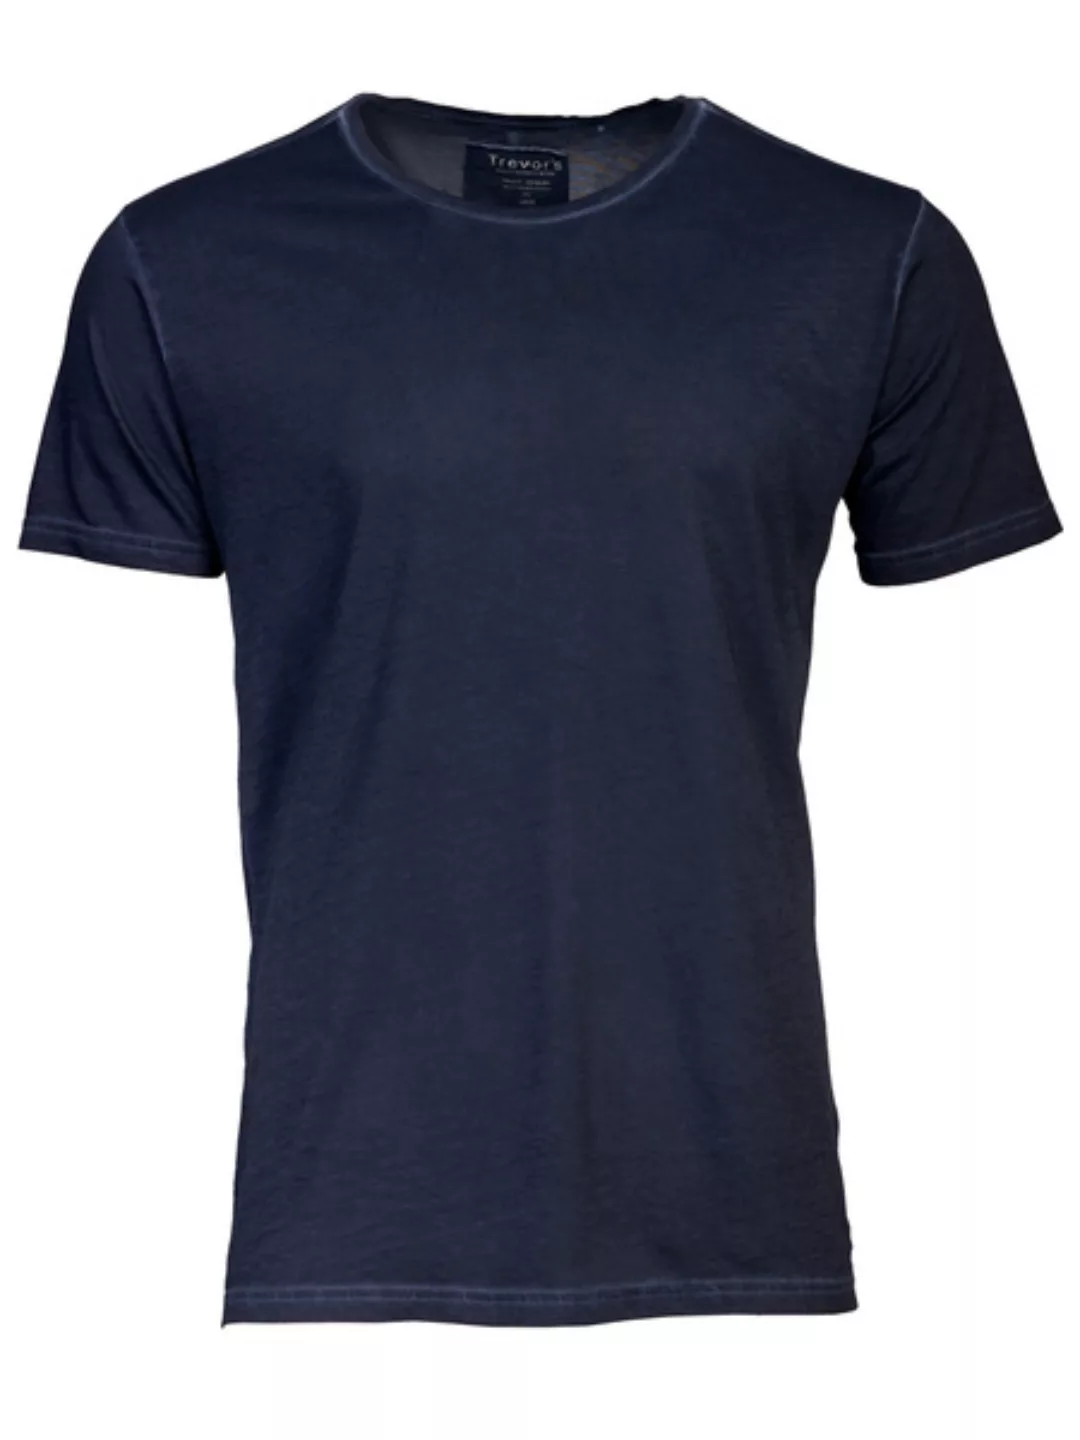 Softes T-shirt Aus 100% Biobaumwolle: Kimi günstig online kaufen